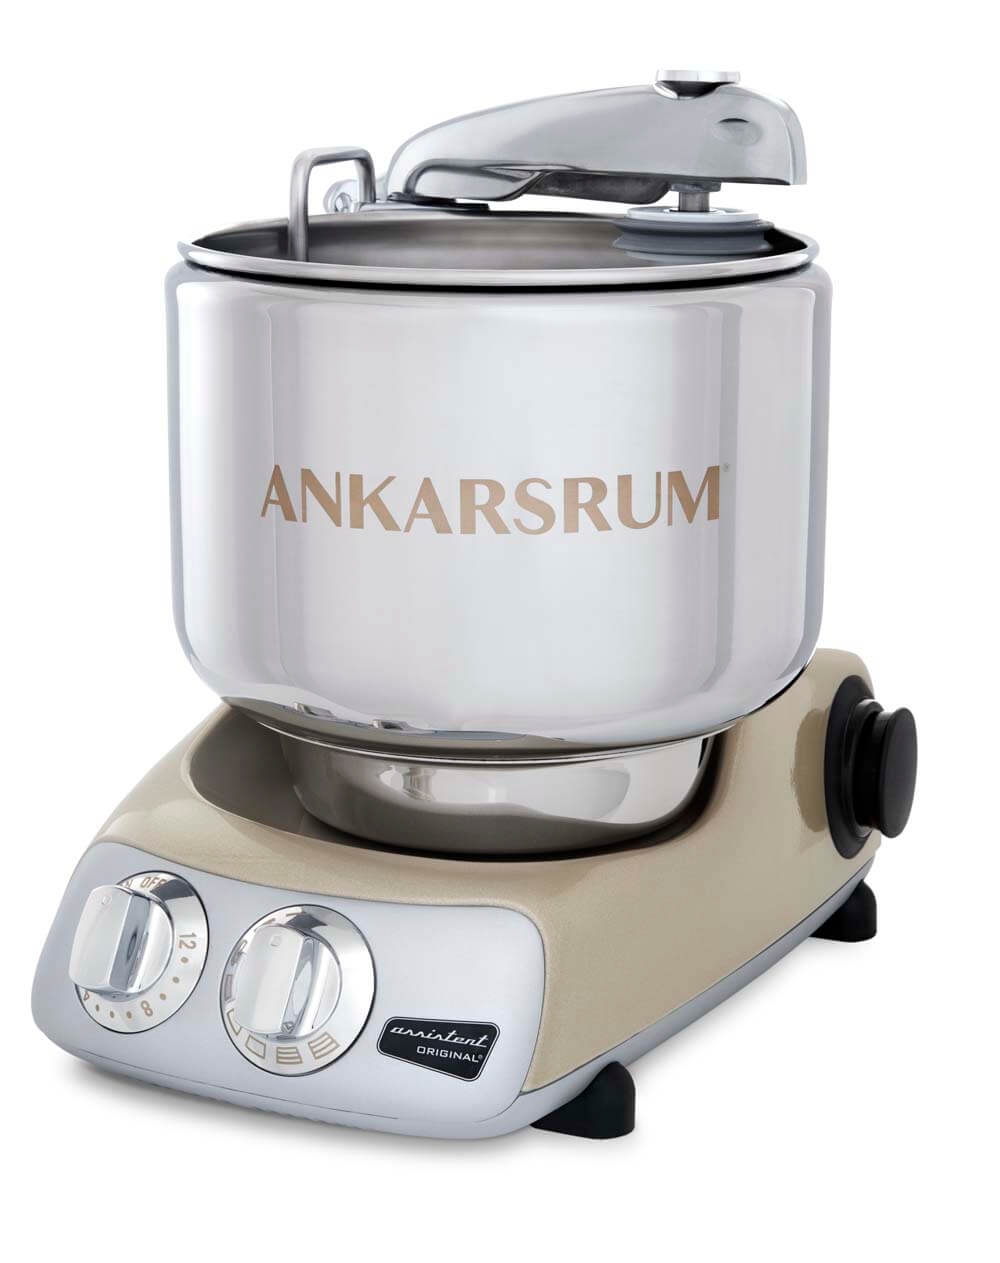 ANKARSRUM Assistent Universal-Küchenmaschine Sparkling Gold AKM6230